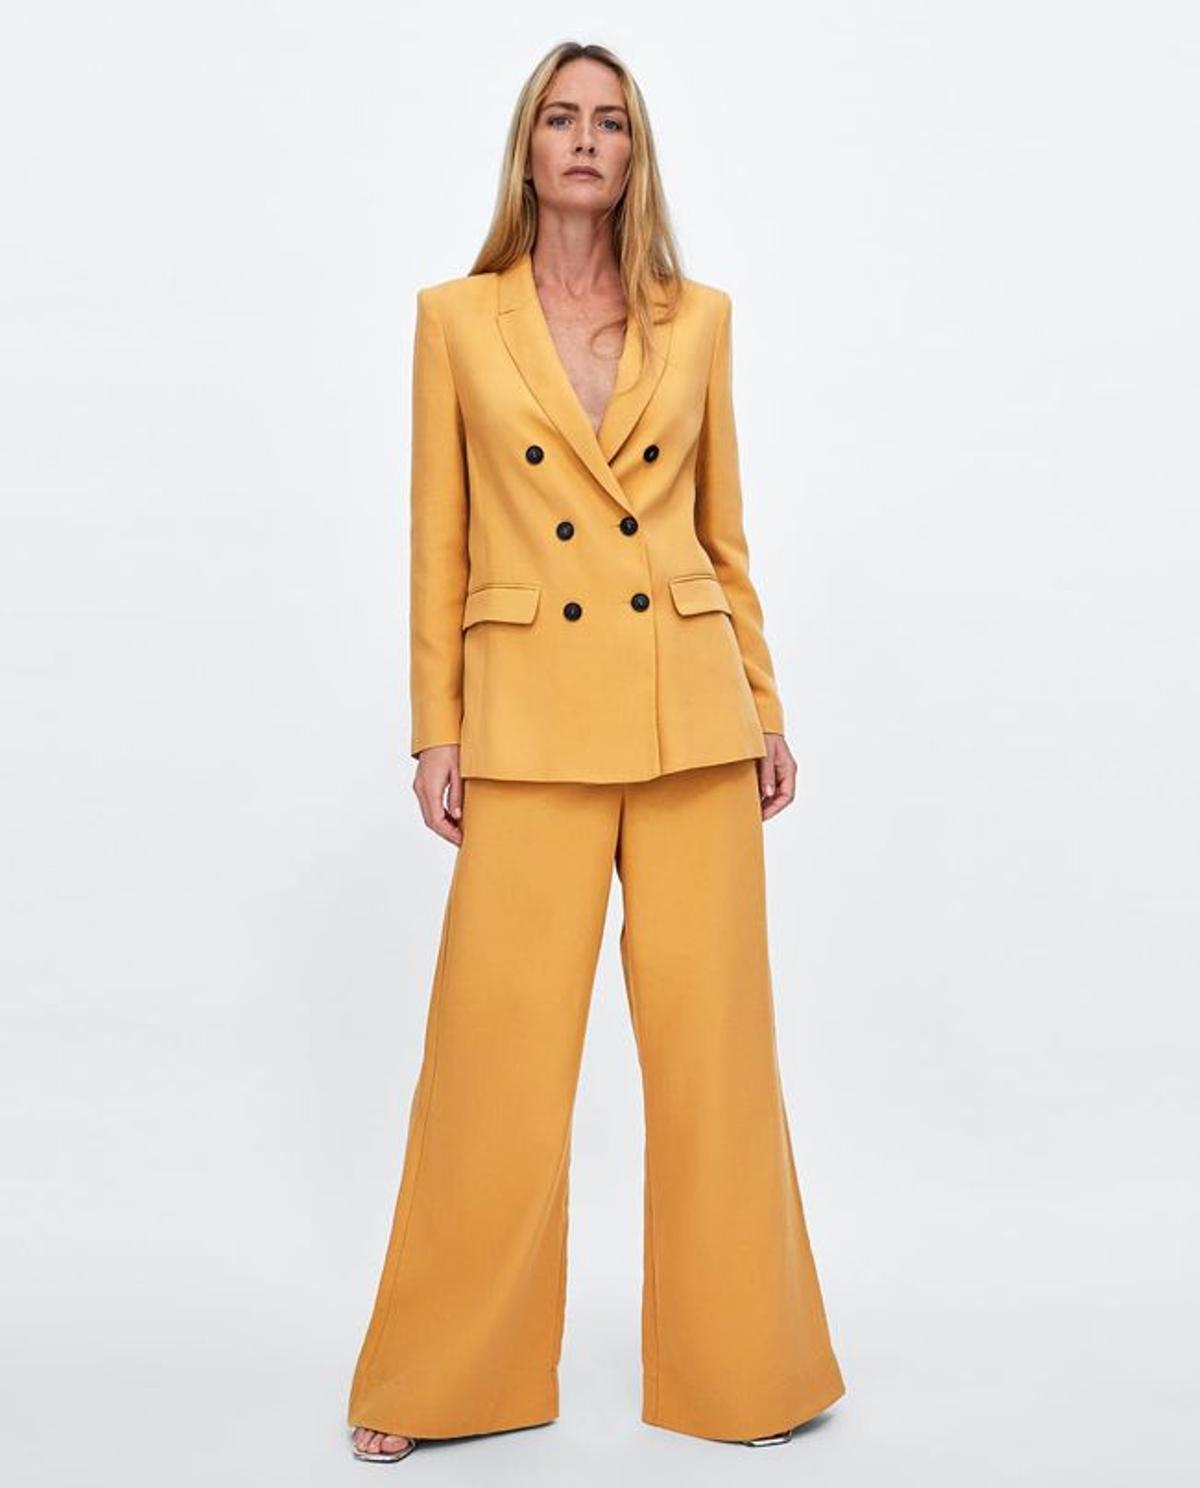 Moda 'timeless' de Zara: traje pantalón amarillo